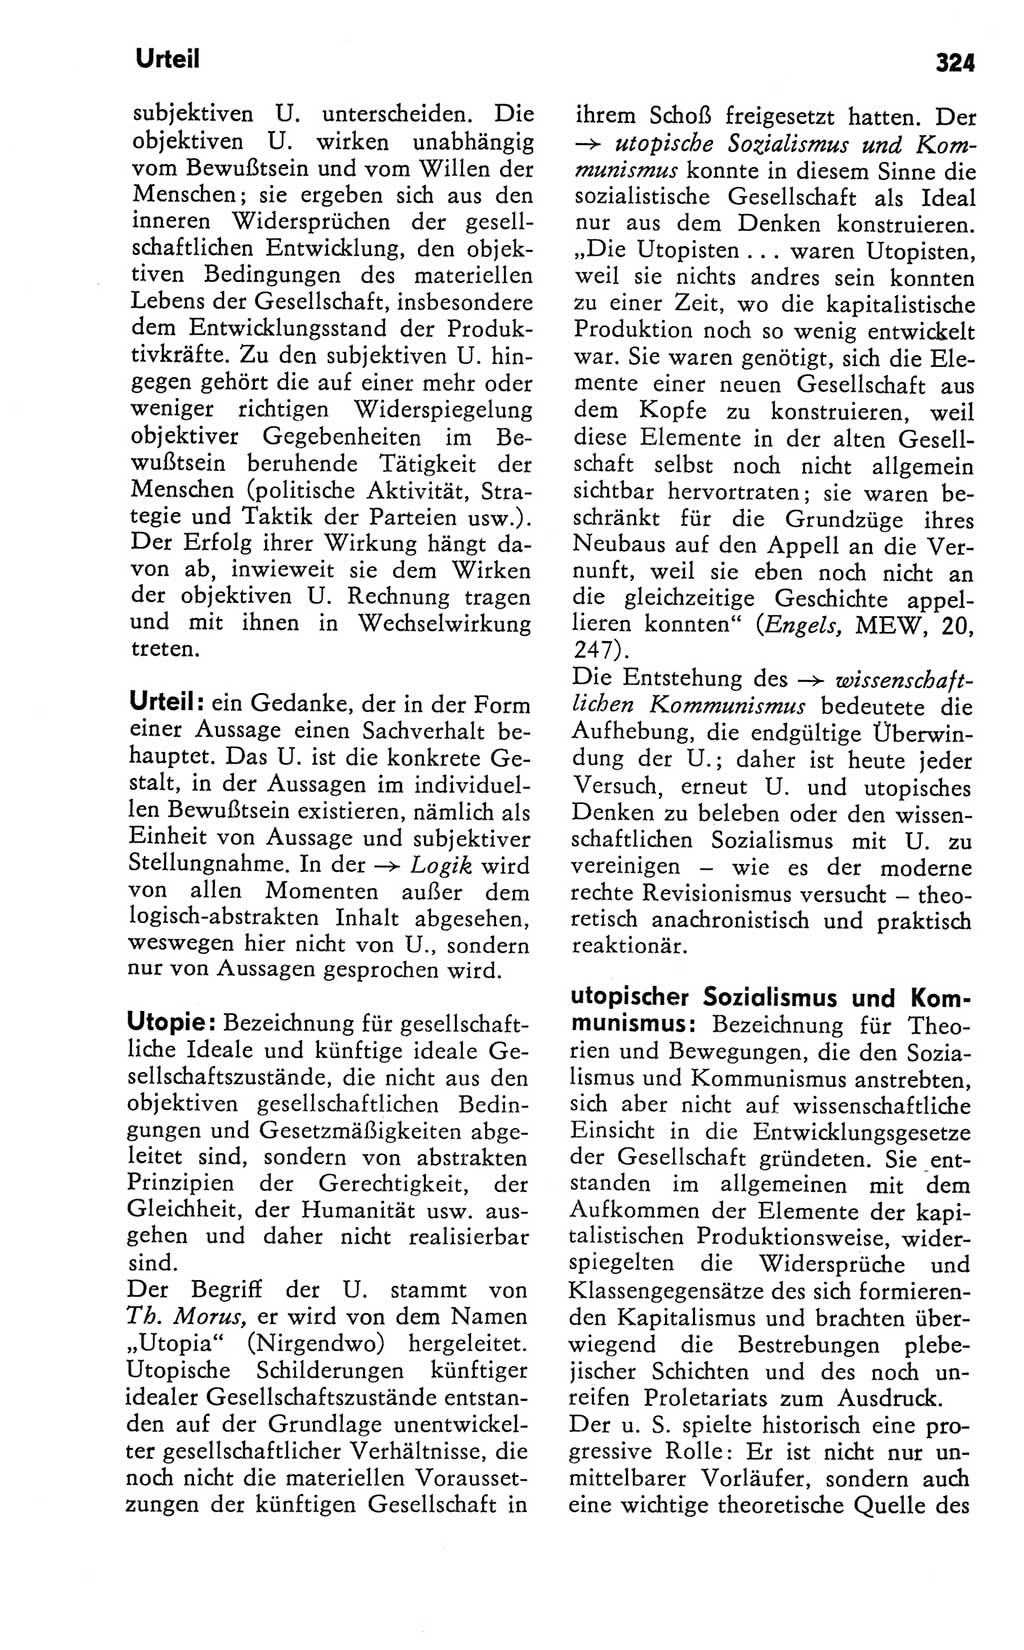 Kleines Wörterbuch der marxistisch-leninistischen Philosophie [Deutsche Demokratische Republik (DDR)] 1981, Seite 324 (Kl. Wb. ML Phil. DDR 1981, S. 324)